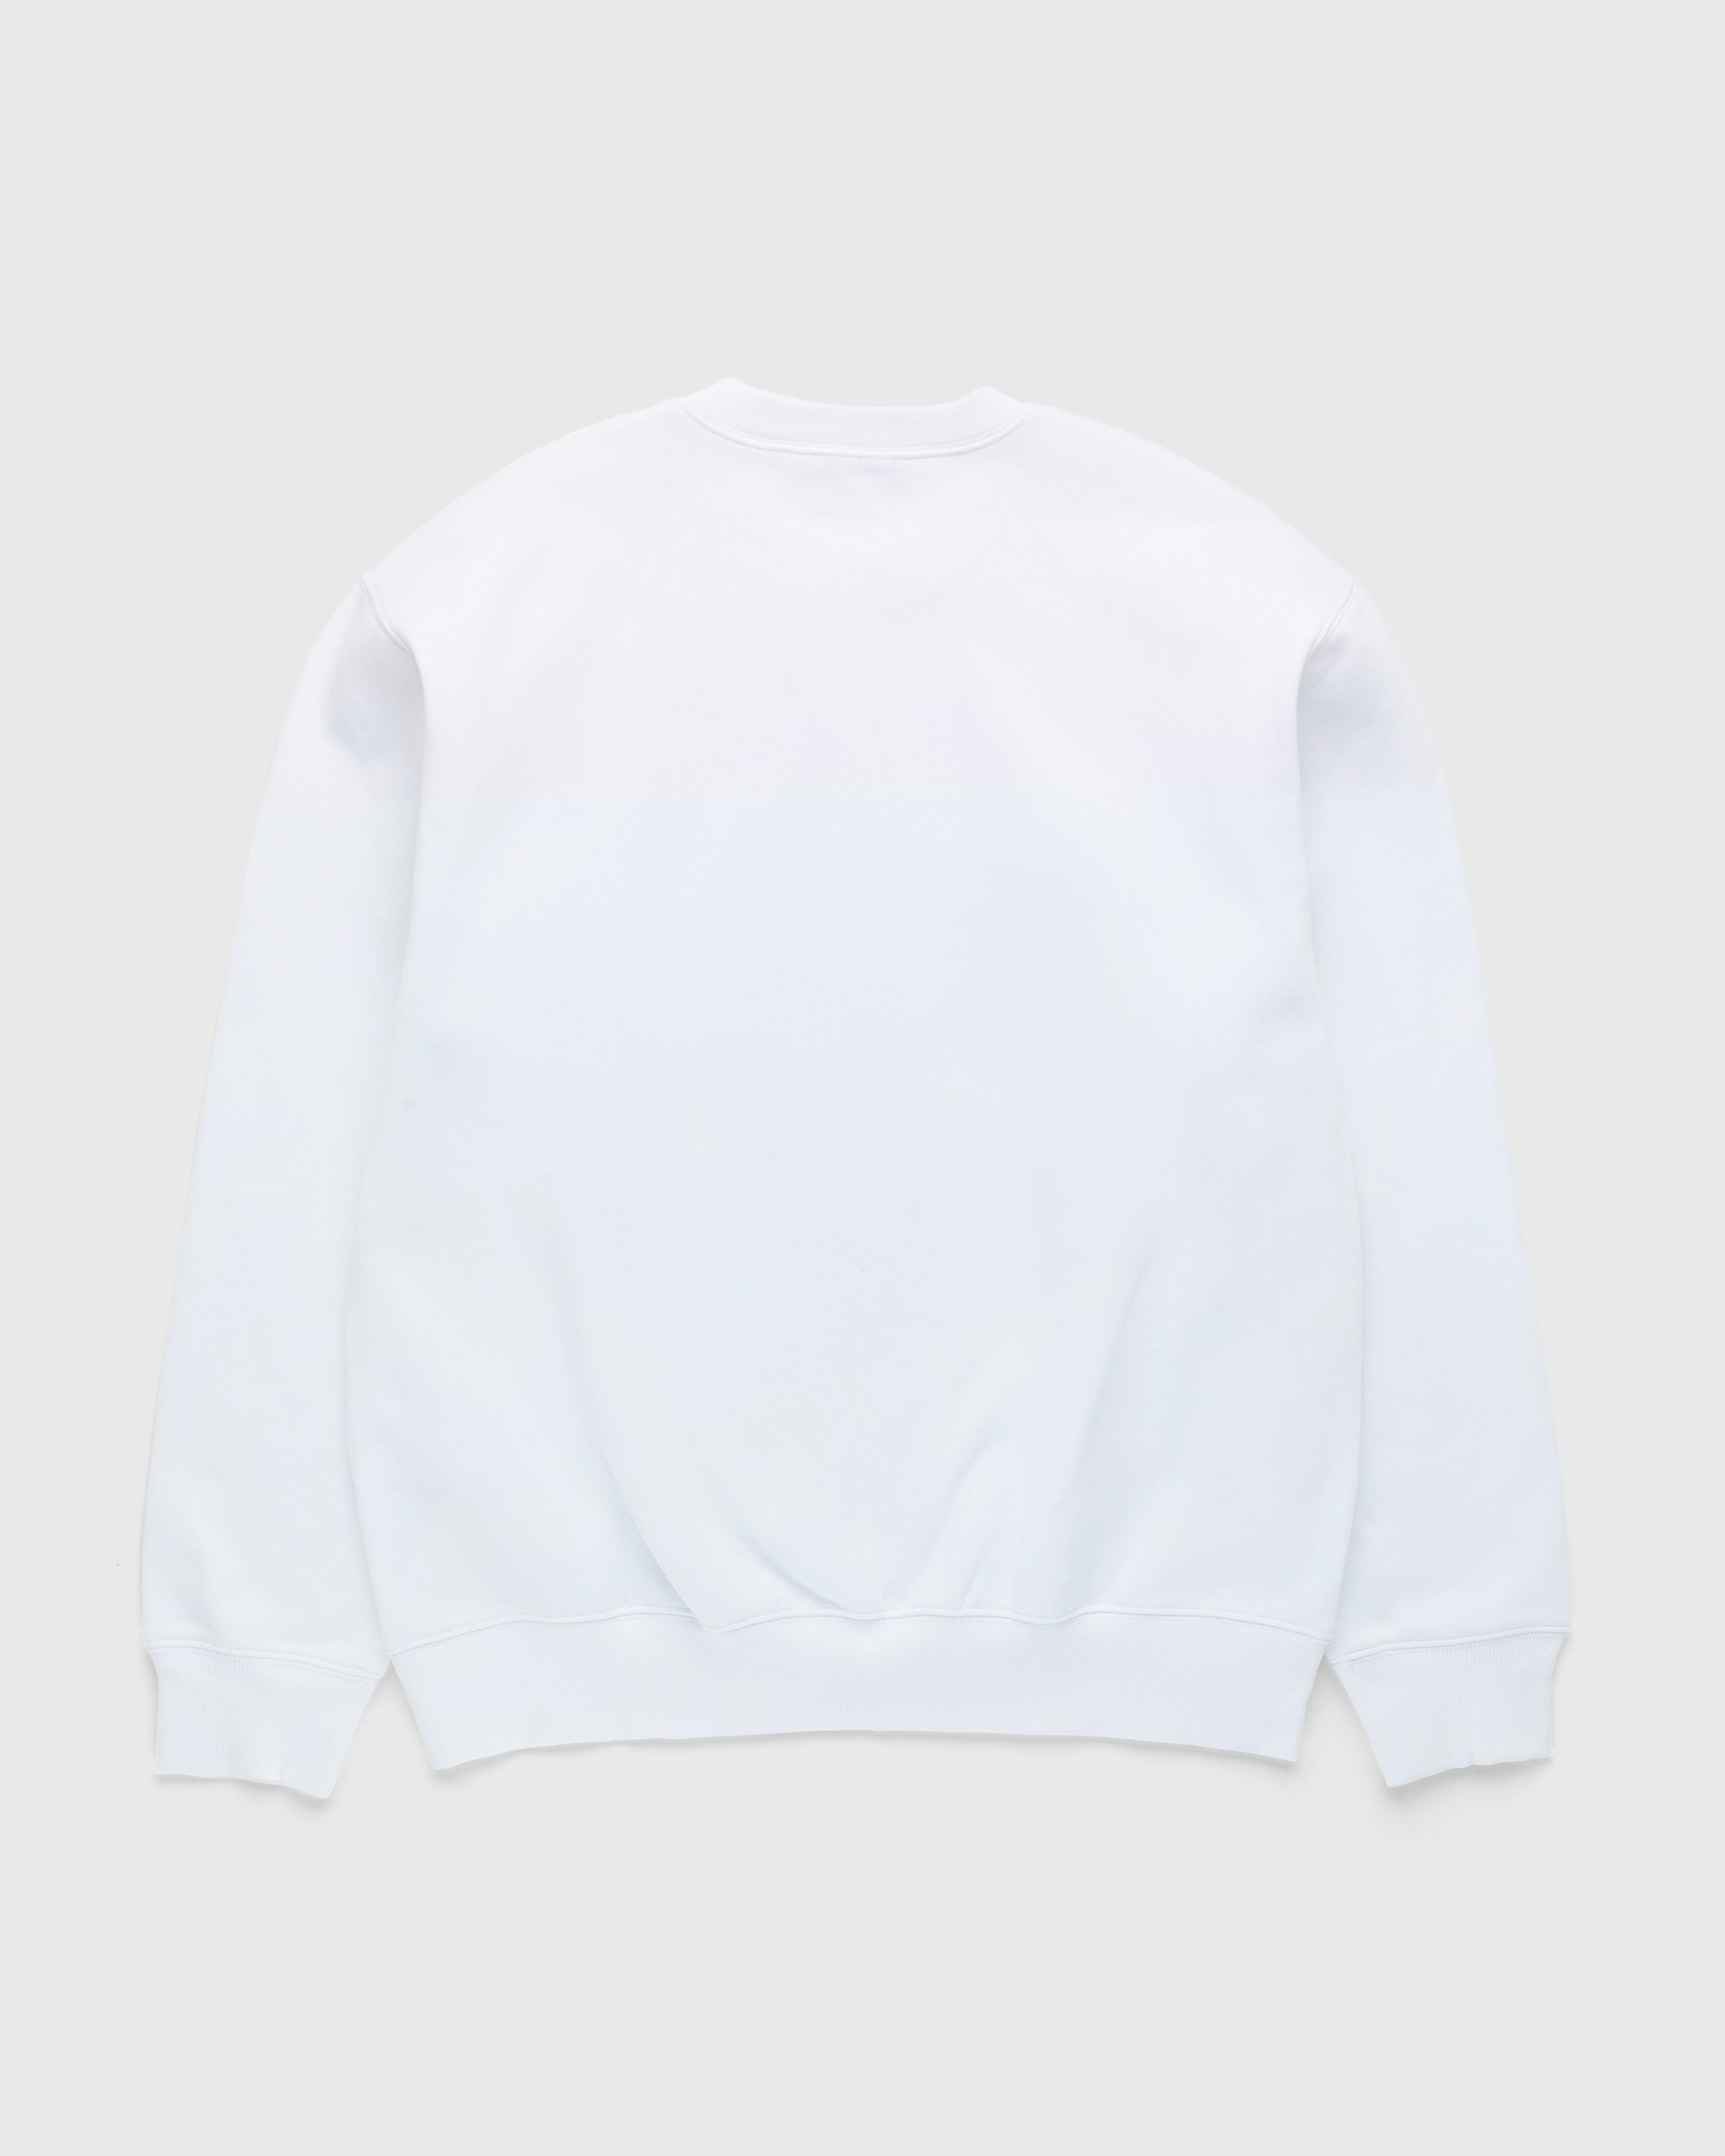 Carhartt WIP - Lucky Painter Sweatshirt White - Clothing - White - Image 2